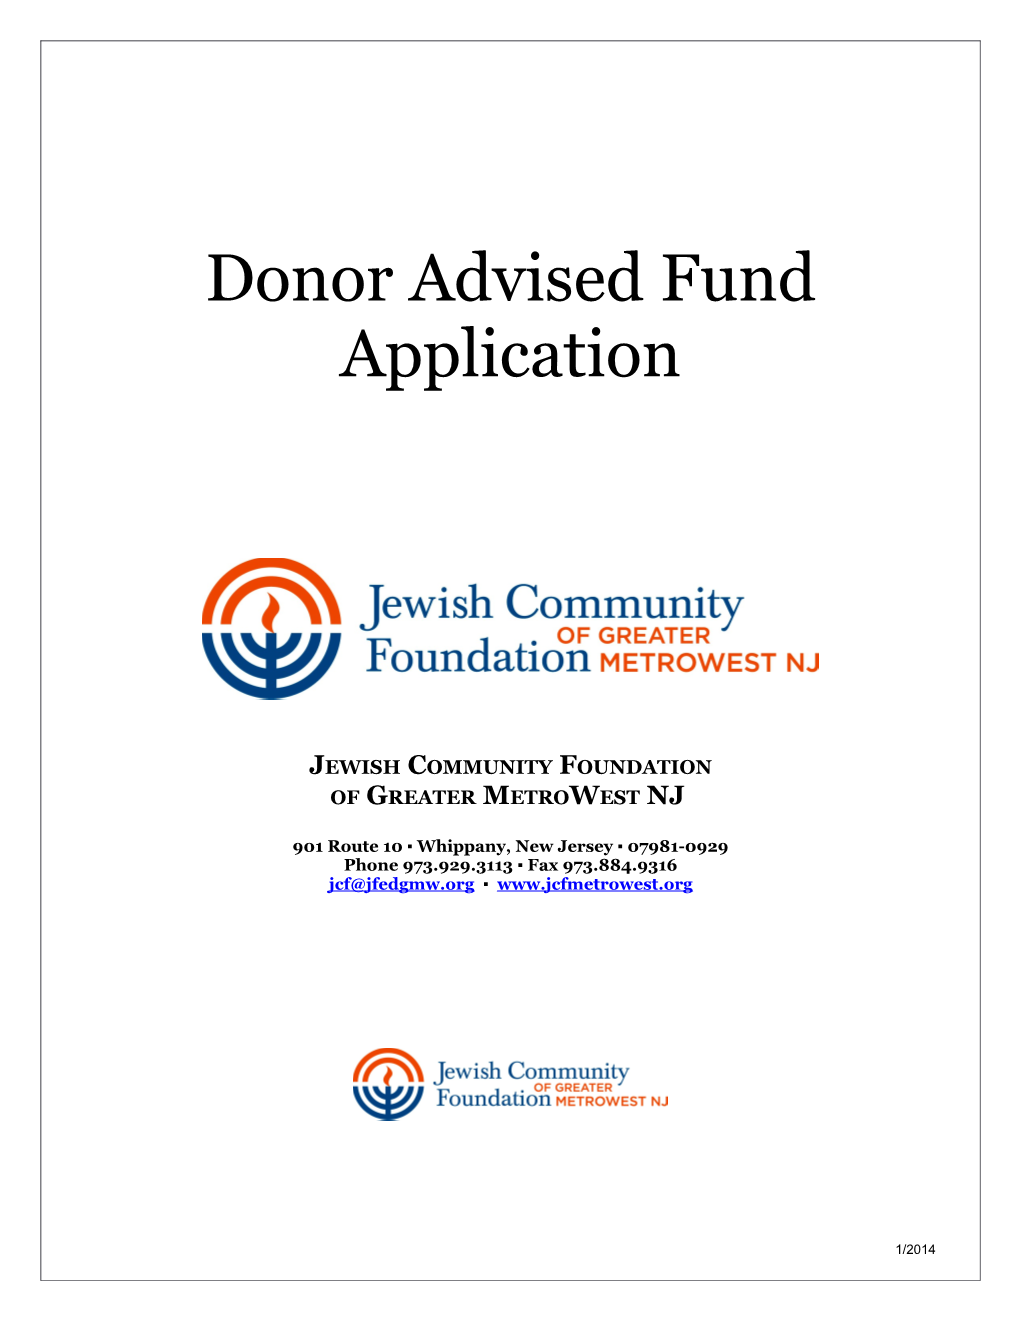 Philanthropic Fund Application